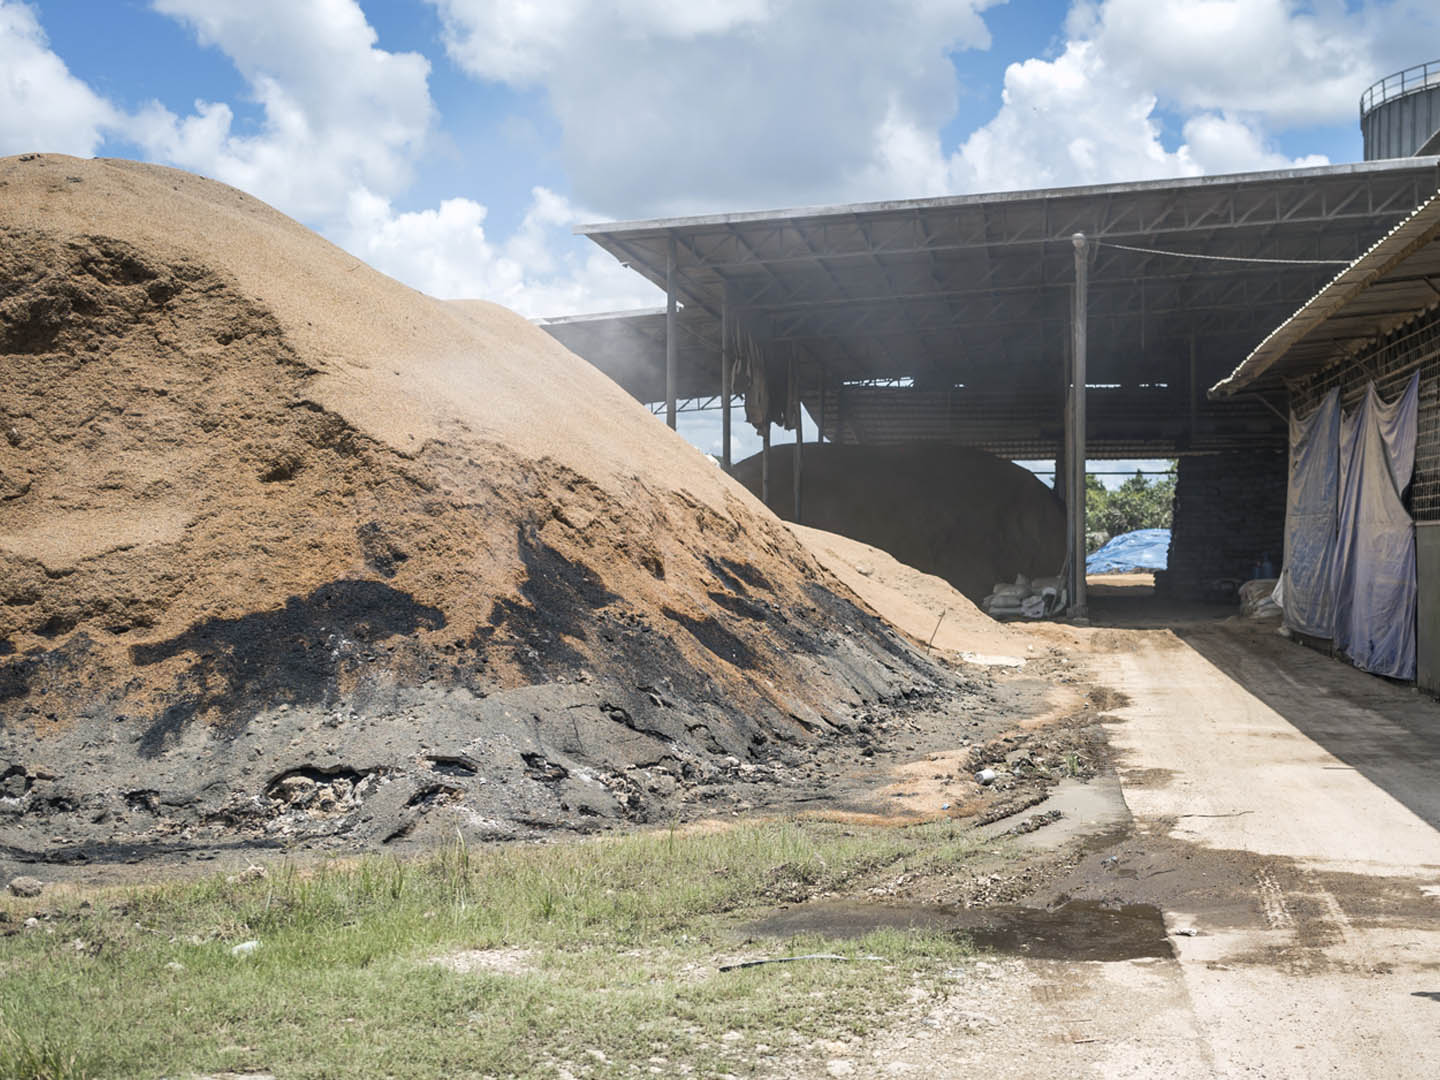 Blick in eine Reismühle in Indonesien: Reisschalen als wertvoller Energielieferant.